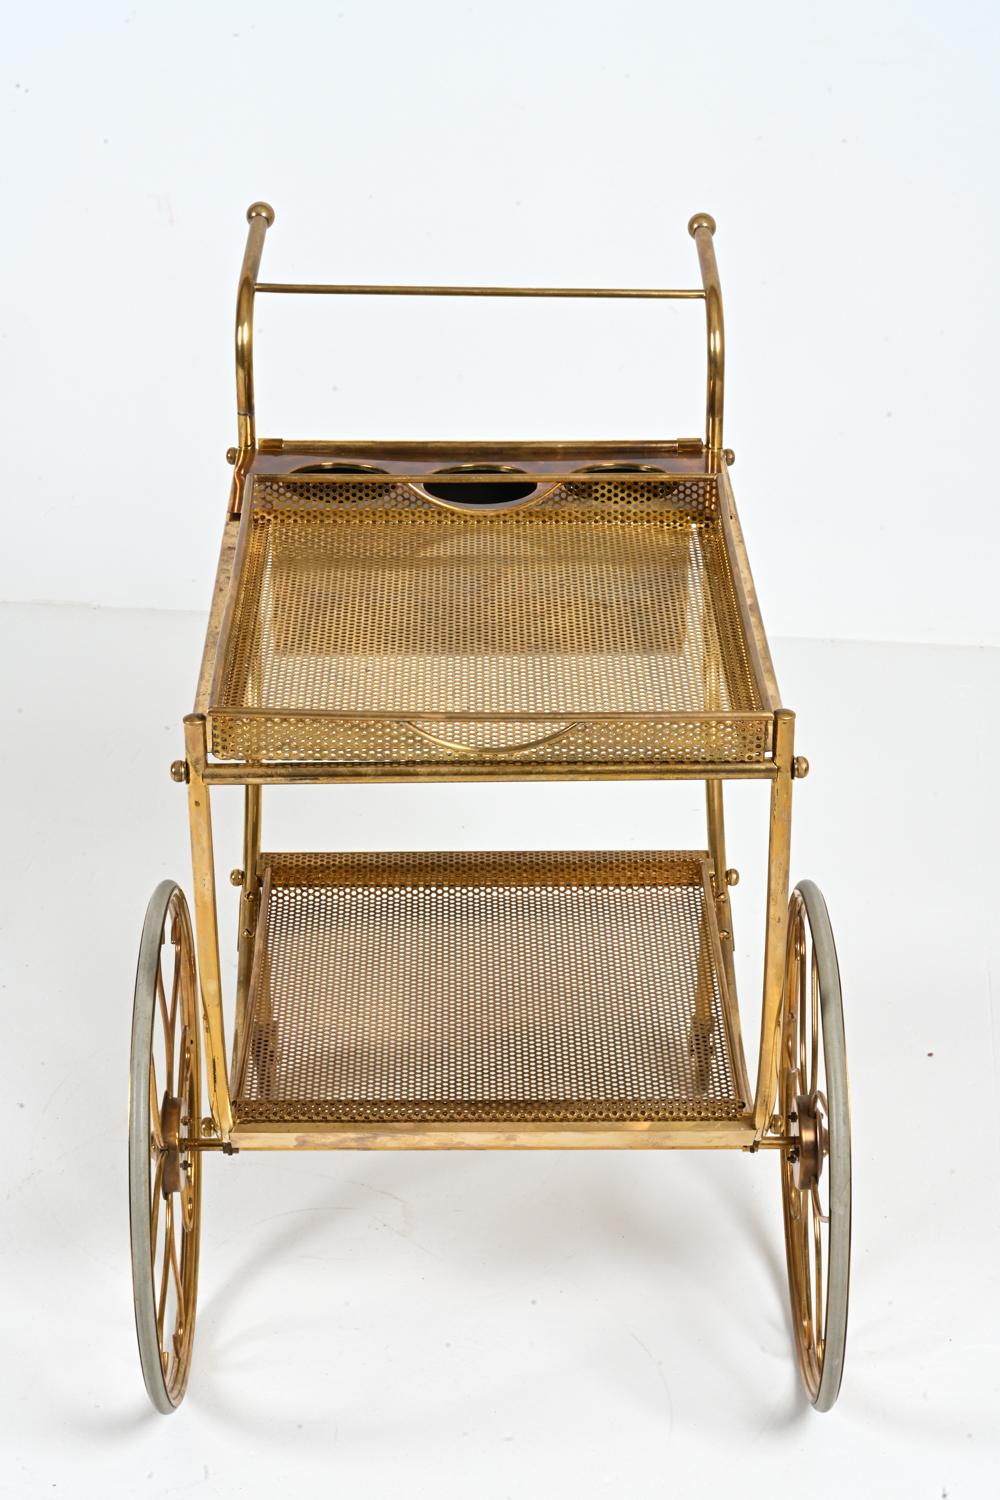 Brass Bar Cart by Josef Frank for Svenskt Tenn, c. 1950's For Sale 6